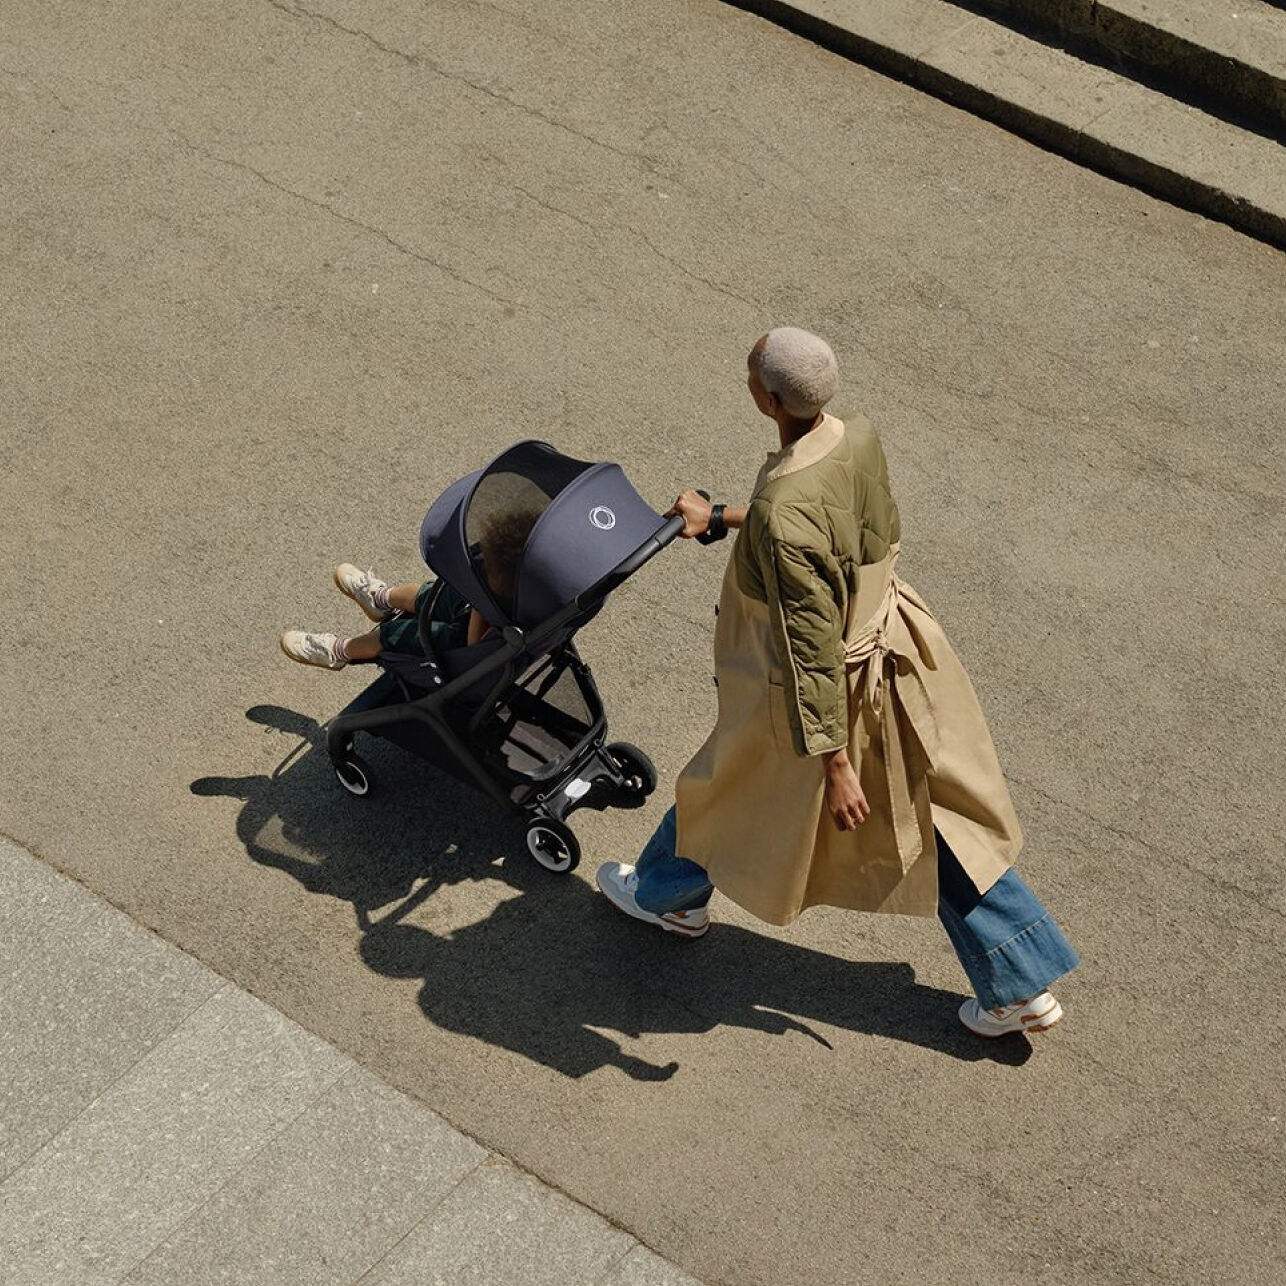 부가부 버터플라이 컴팩트 여행용 스트롤러에 타고 있는 아이와 함께 자신 있게 걷고 있는 엄마.